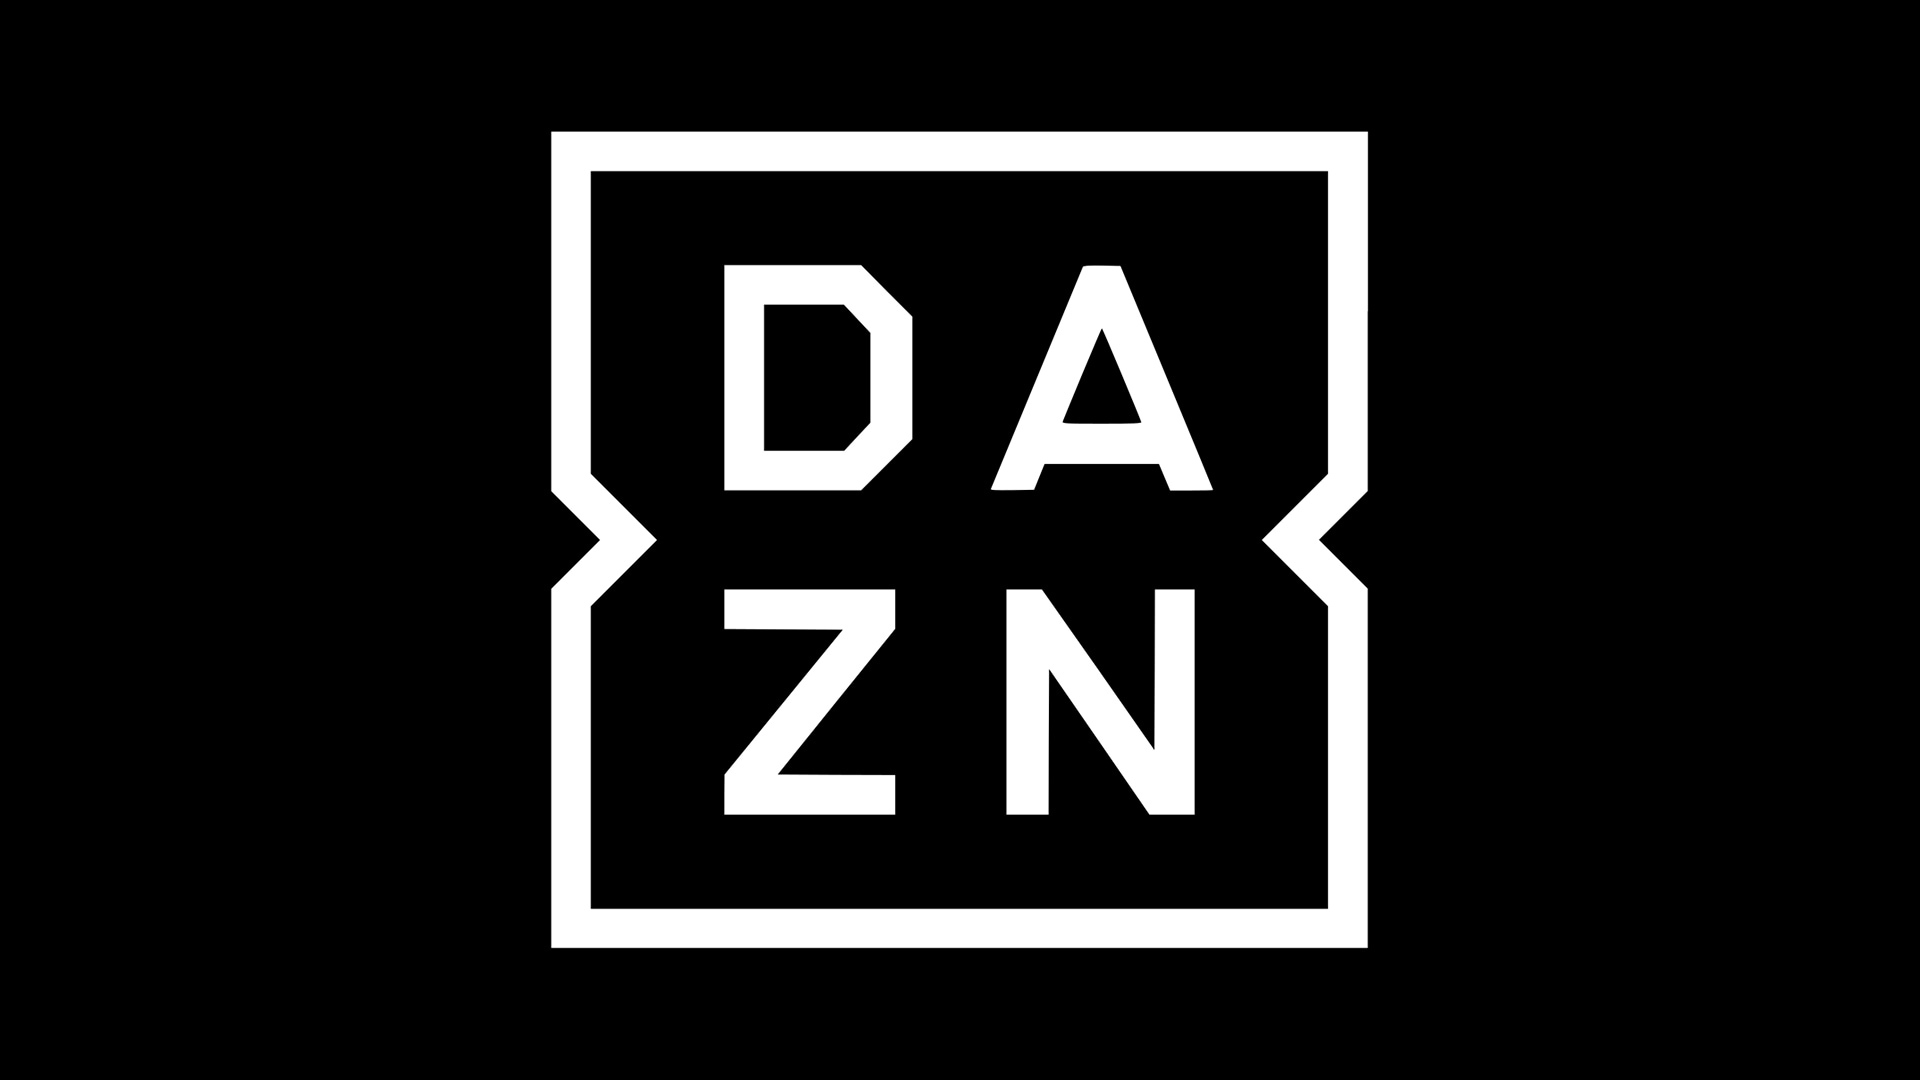 DAZN Full HD a 1080p in arrivo a novembre su Smart TV e set-top box